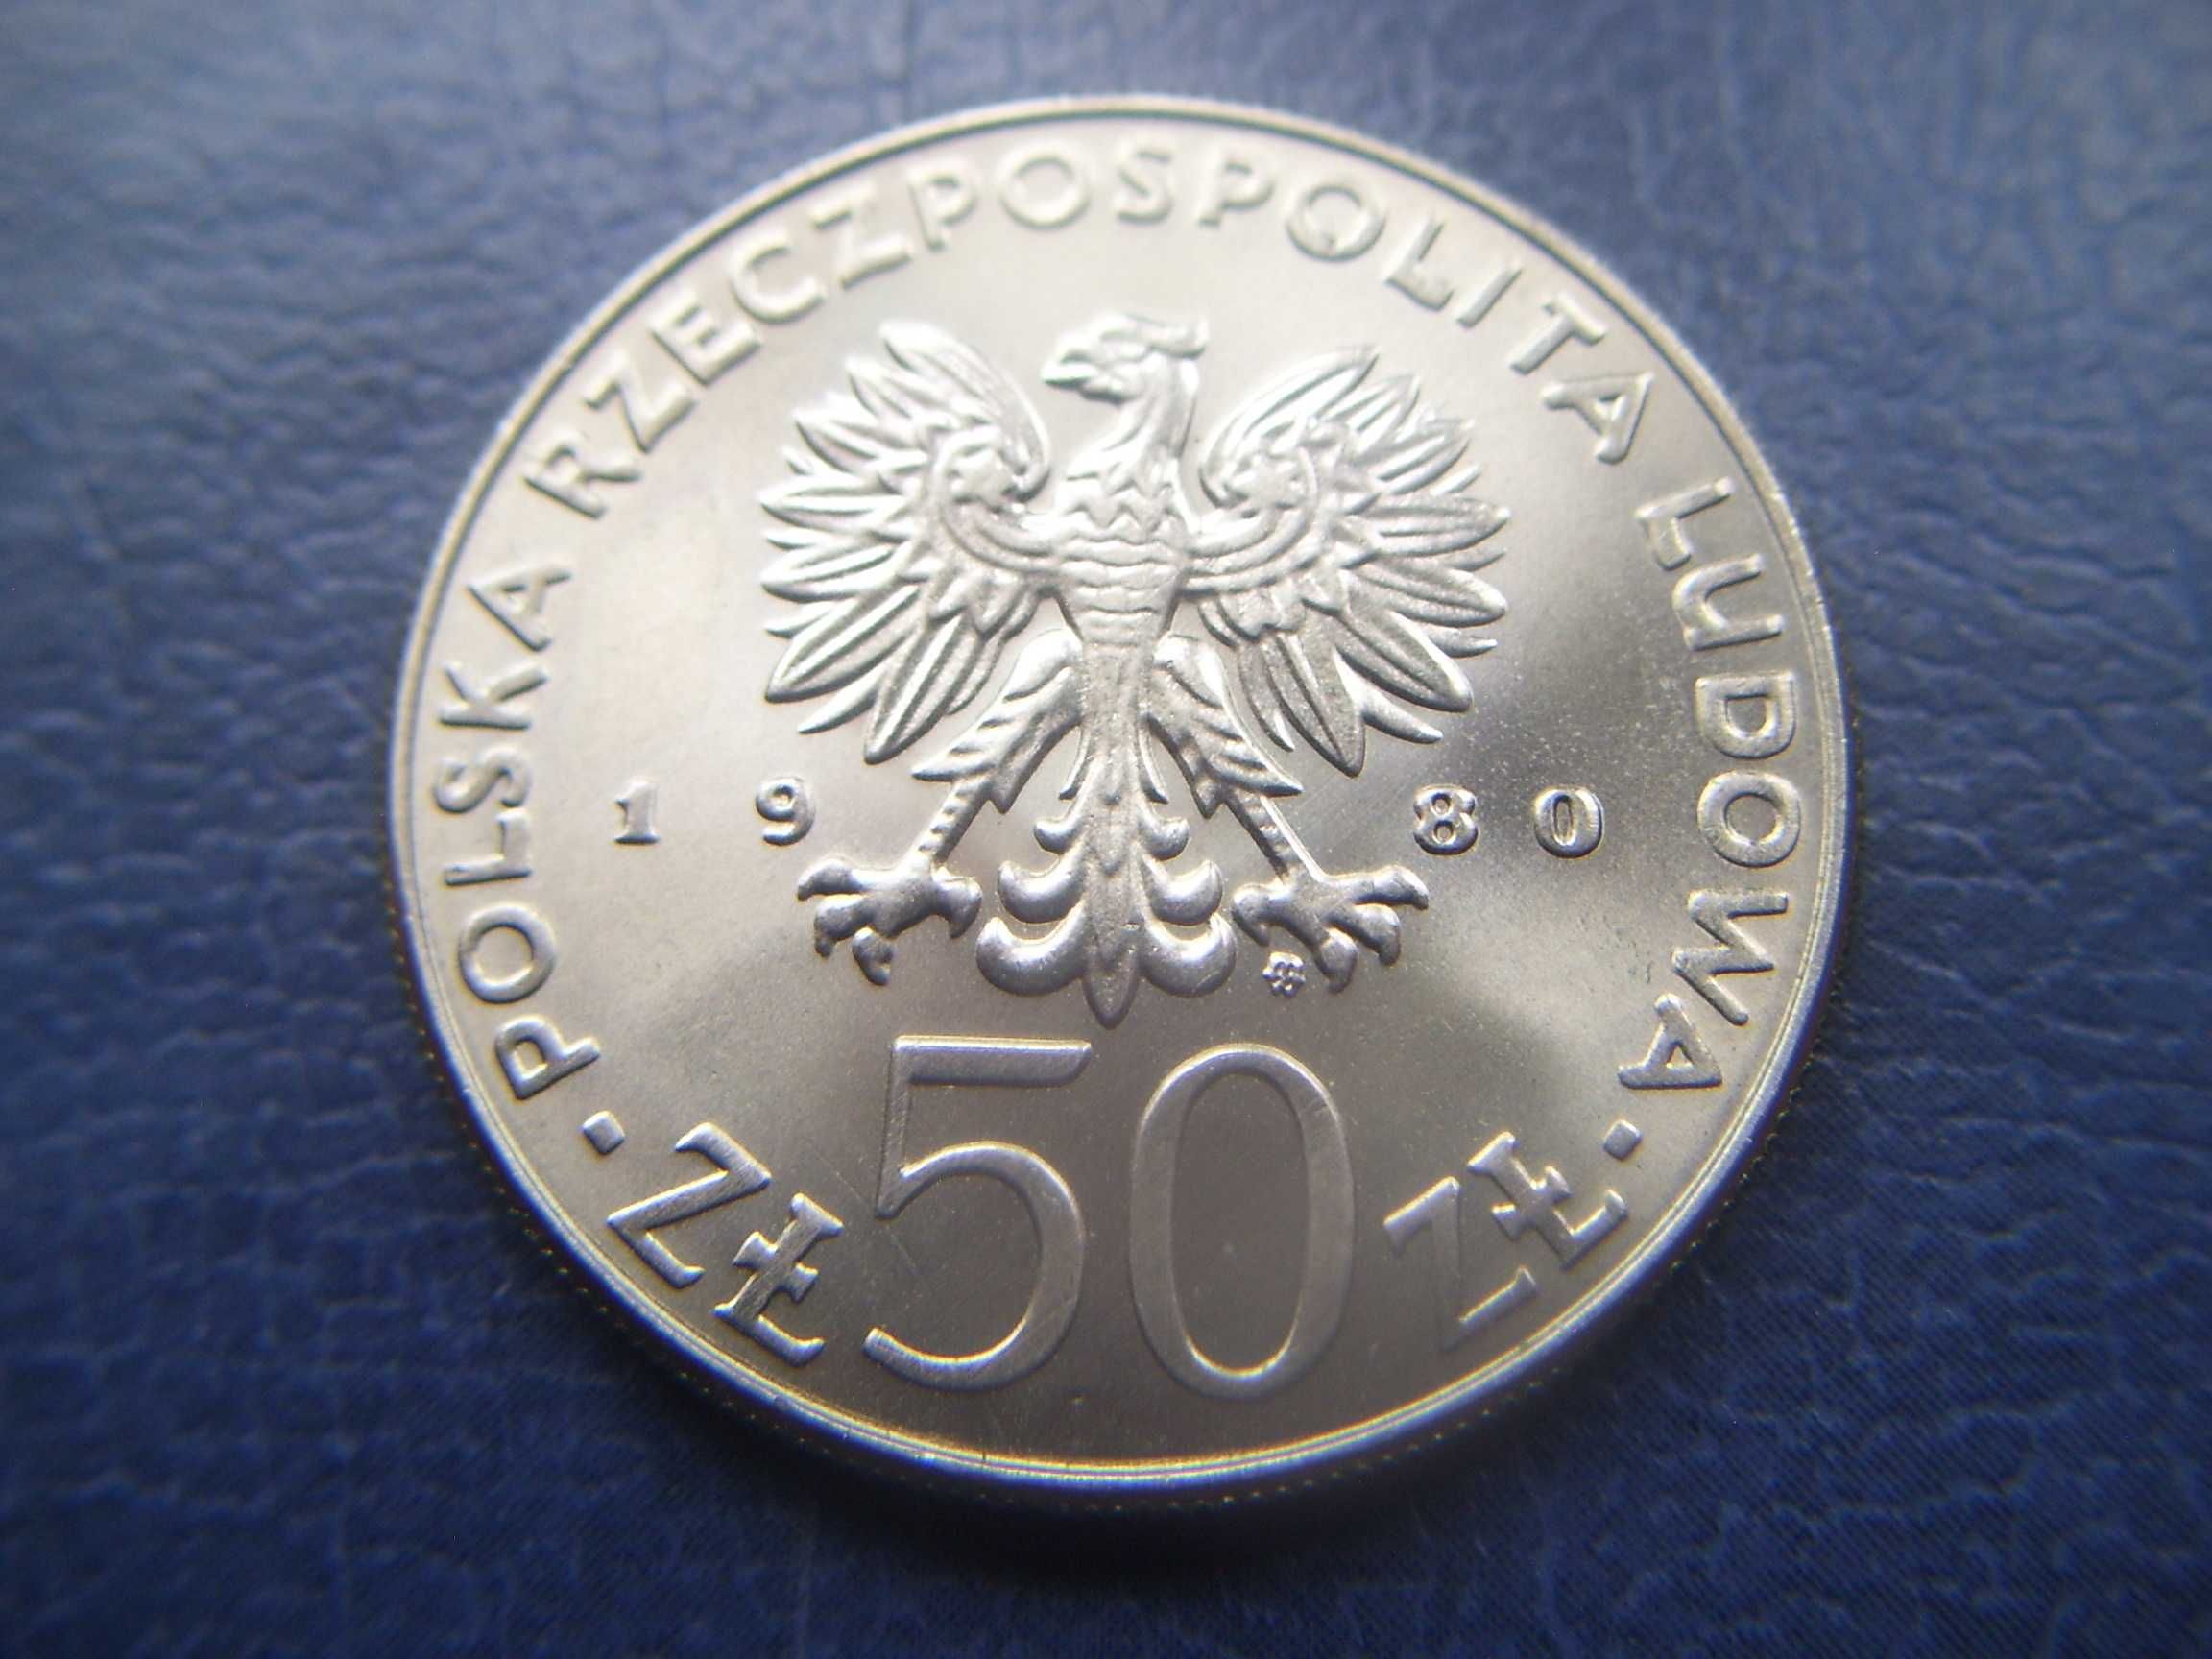 Stare monety 50 złotych 1980 Chrobry stan menniczy PRL B